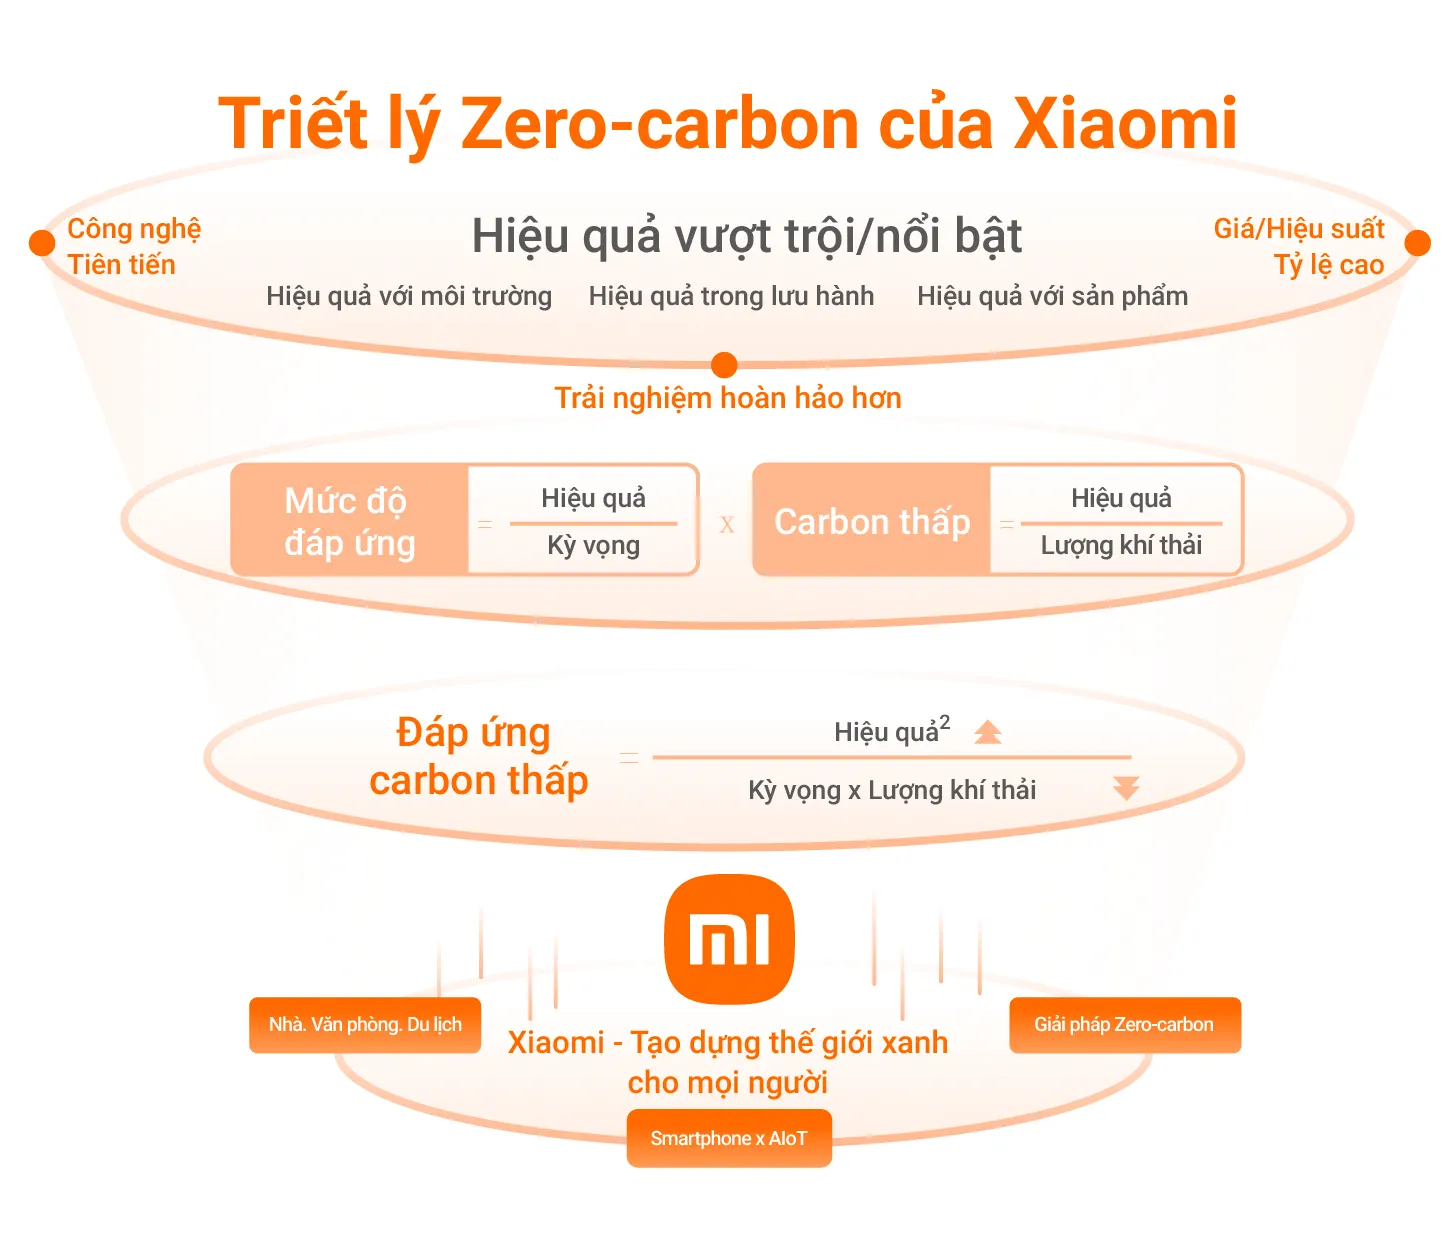 Xiaomi đặt mục tiêu cắt giảm 98% phát thải khí nhà kính vào năm 2040